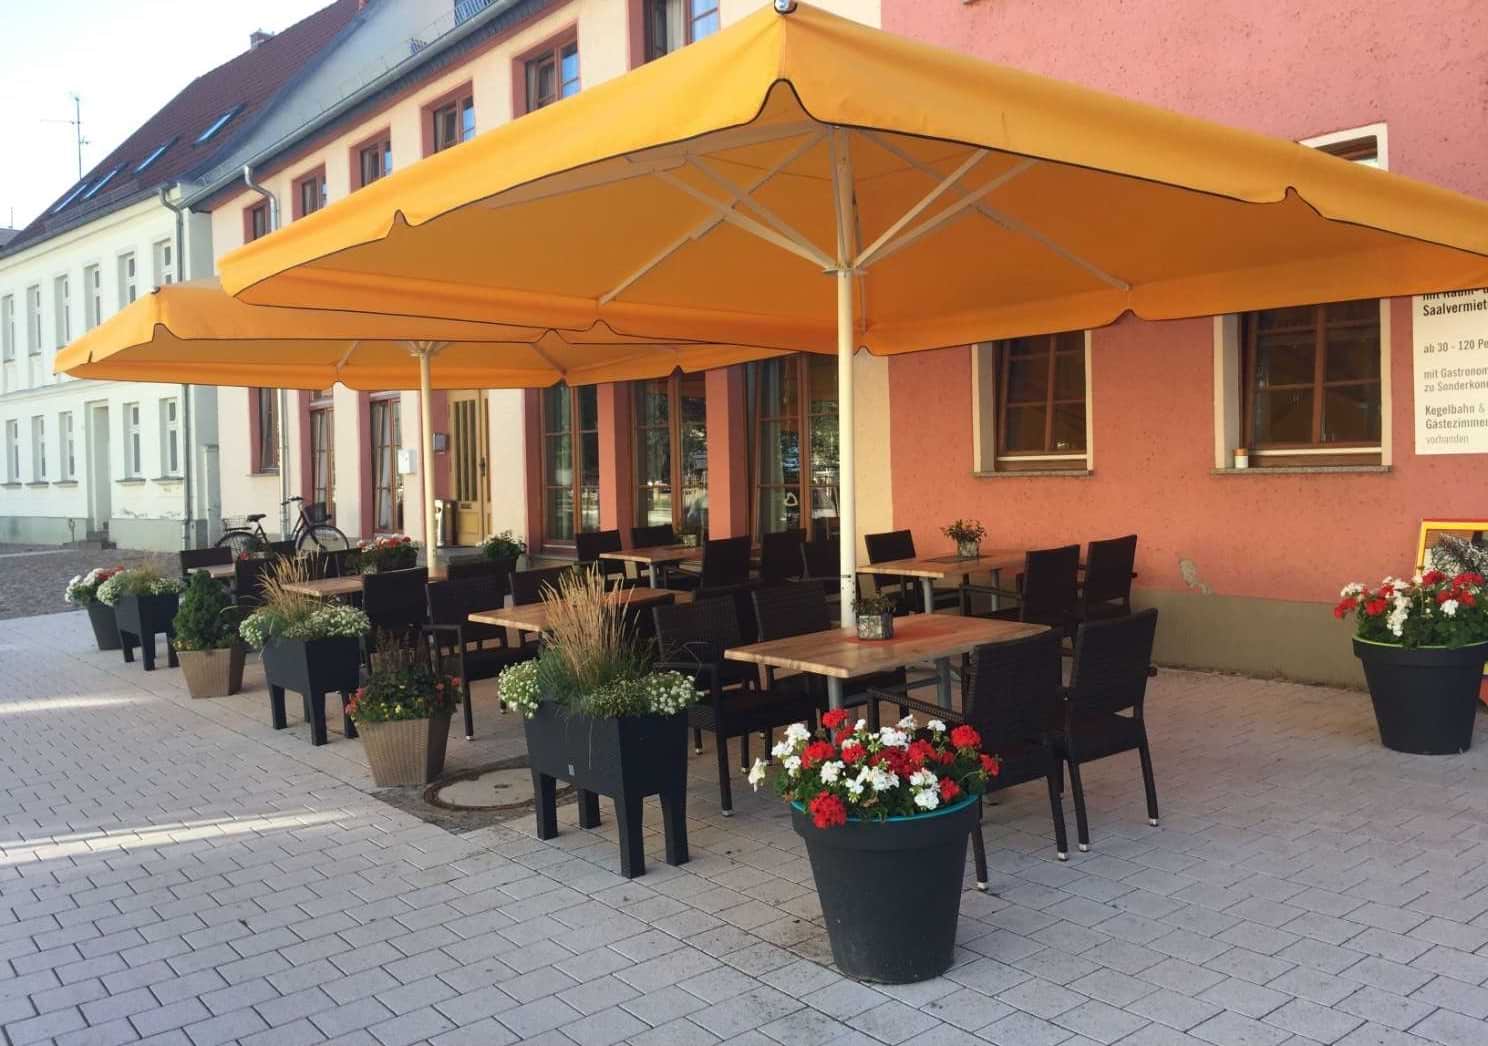 Terrasse mit Sitzmöglichkeiten, Blumen und aufgespannten Gastronomieschirmen